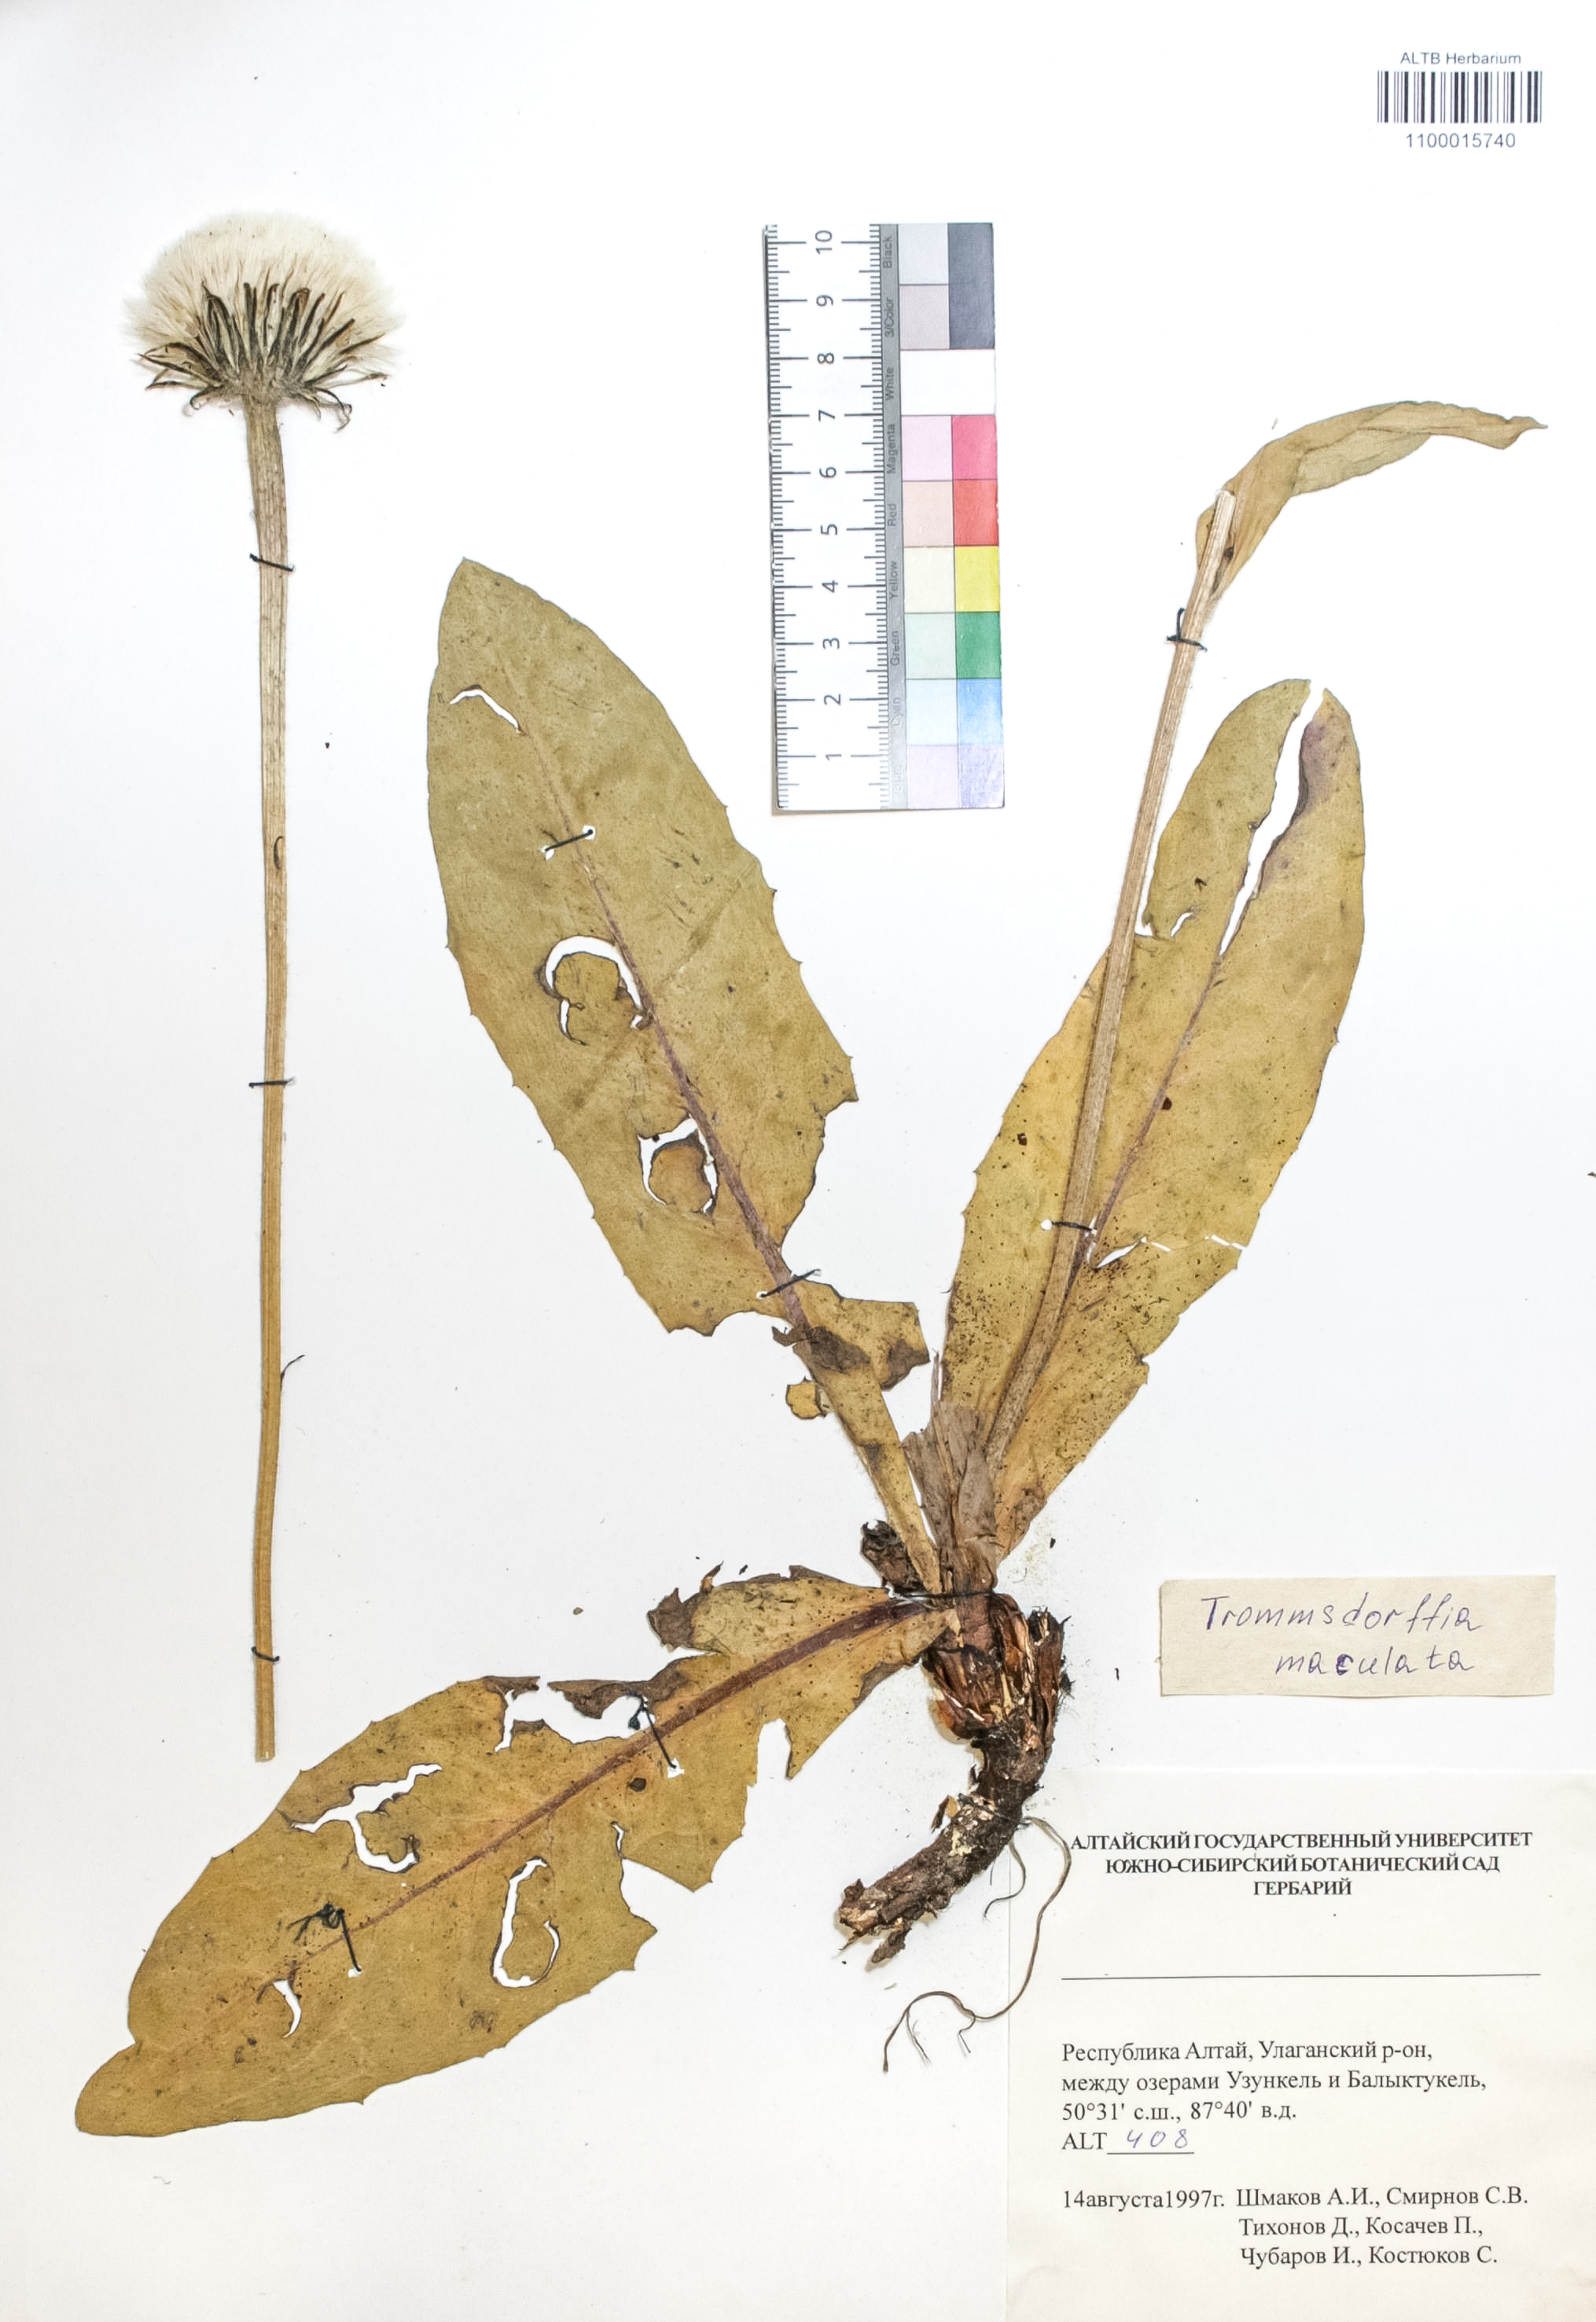 Trommsdorffia maculata (L.) Bernh.